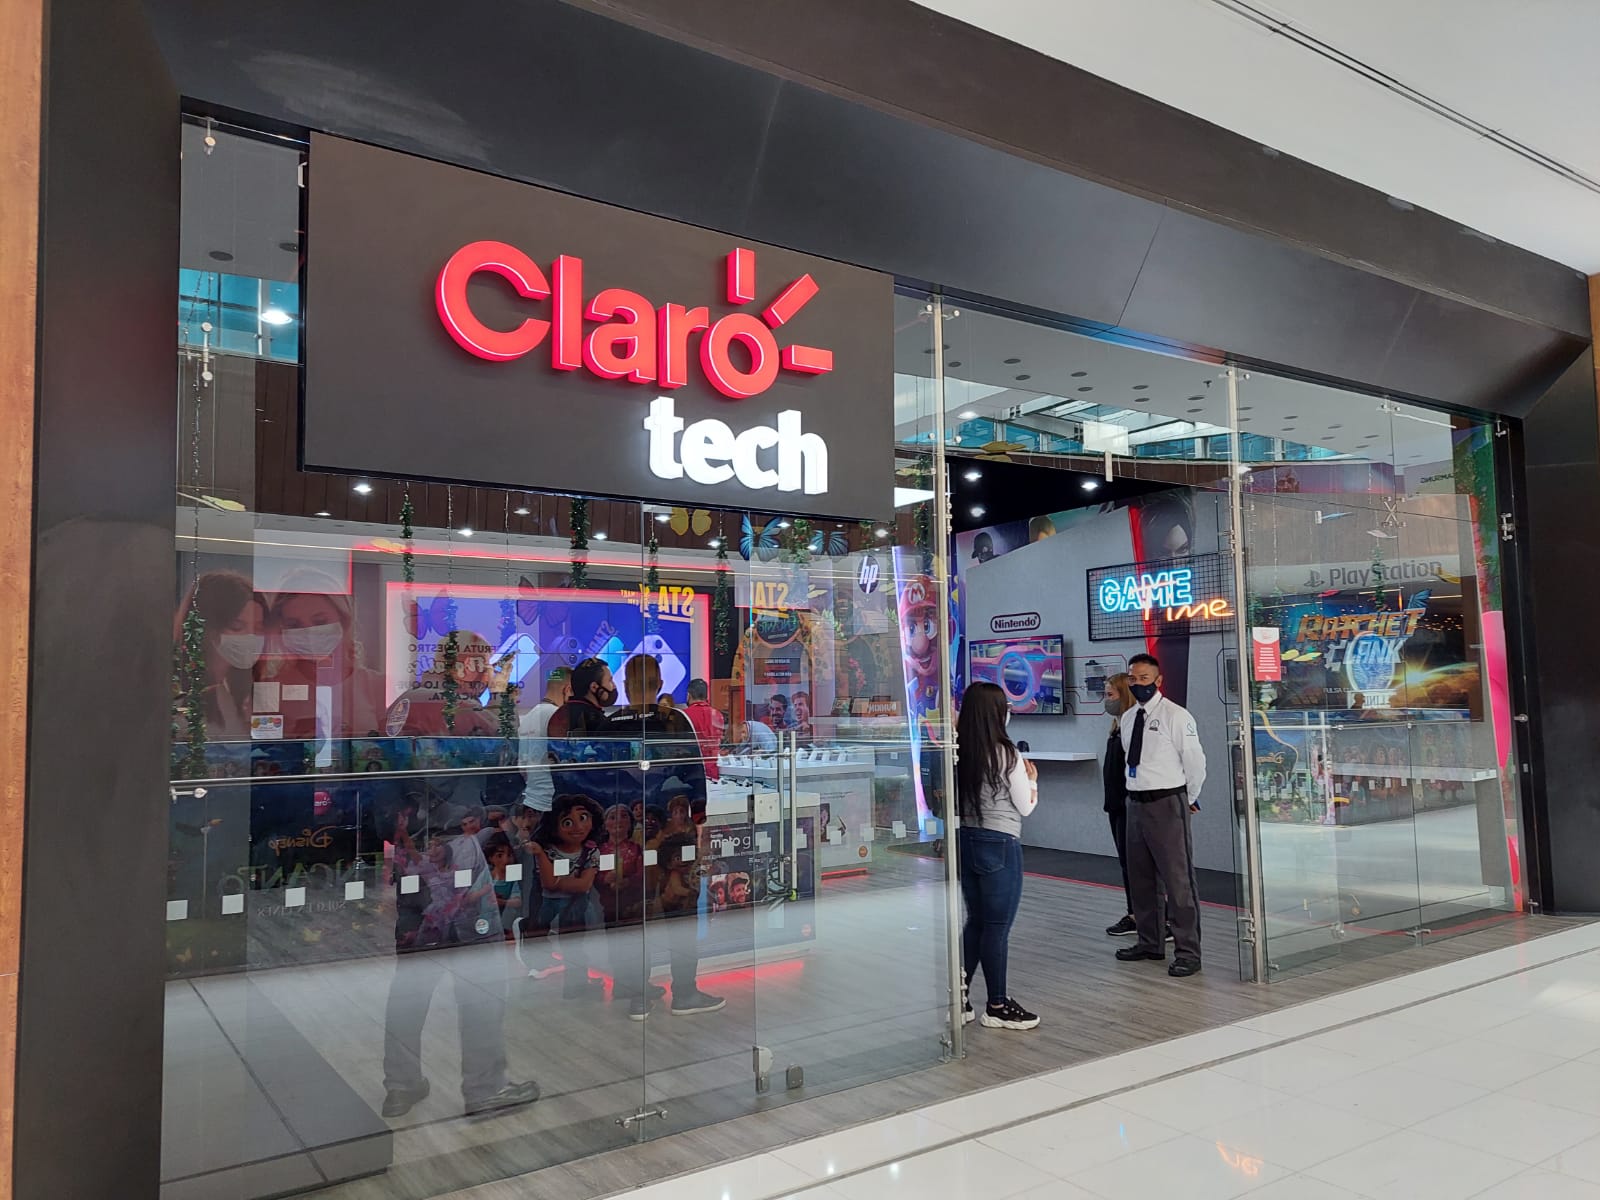 Claro Colombia anunció que inauguró su nueva tienda de tecnología Claro tech, la primera de la compañía líder en telecomunicaciones